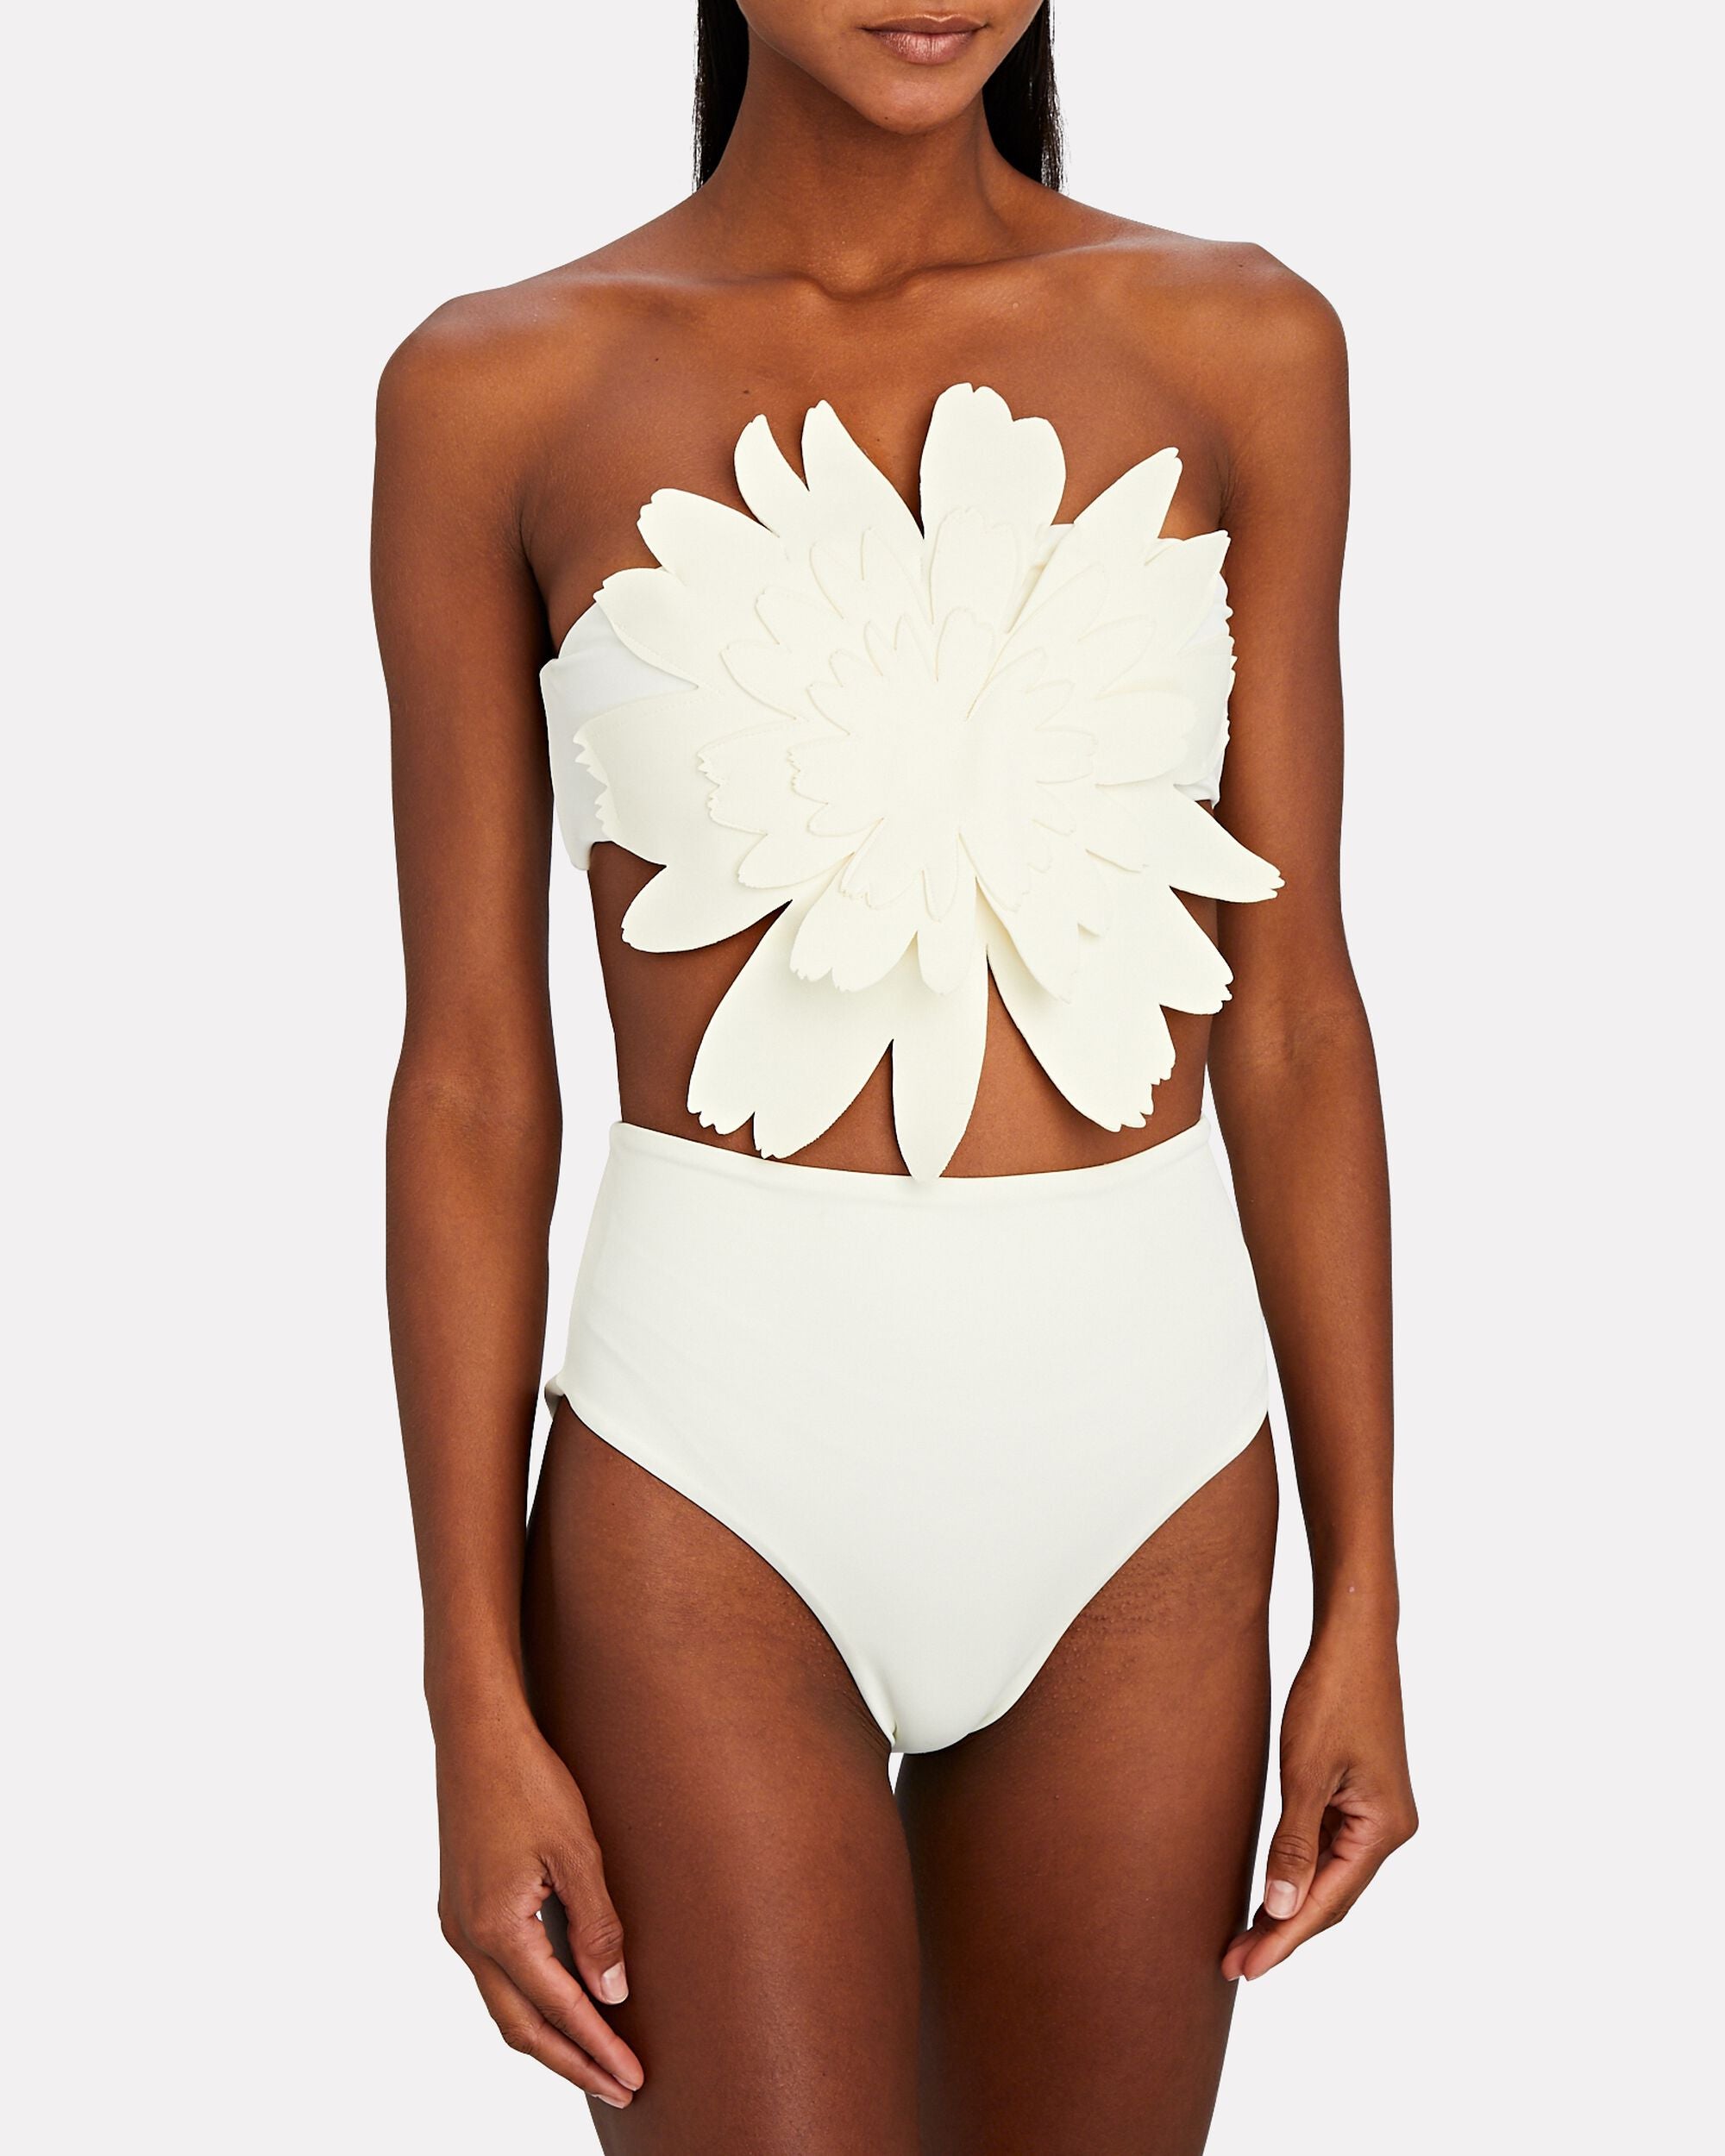 Luvswimgirl Floral Bikini Set